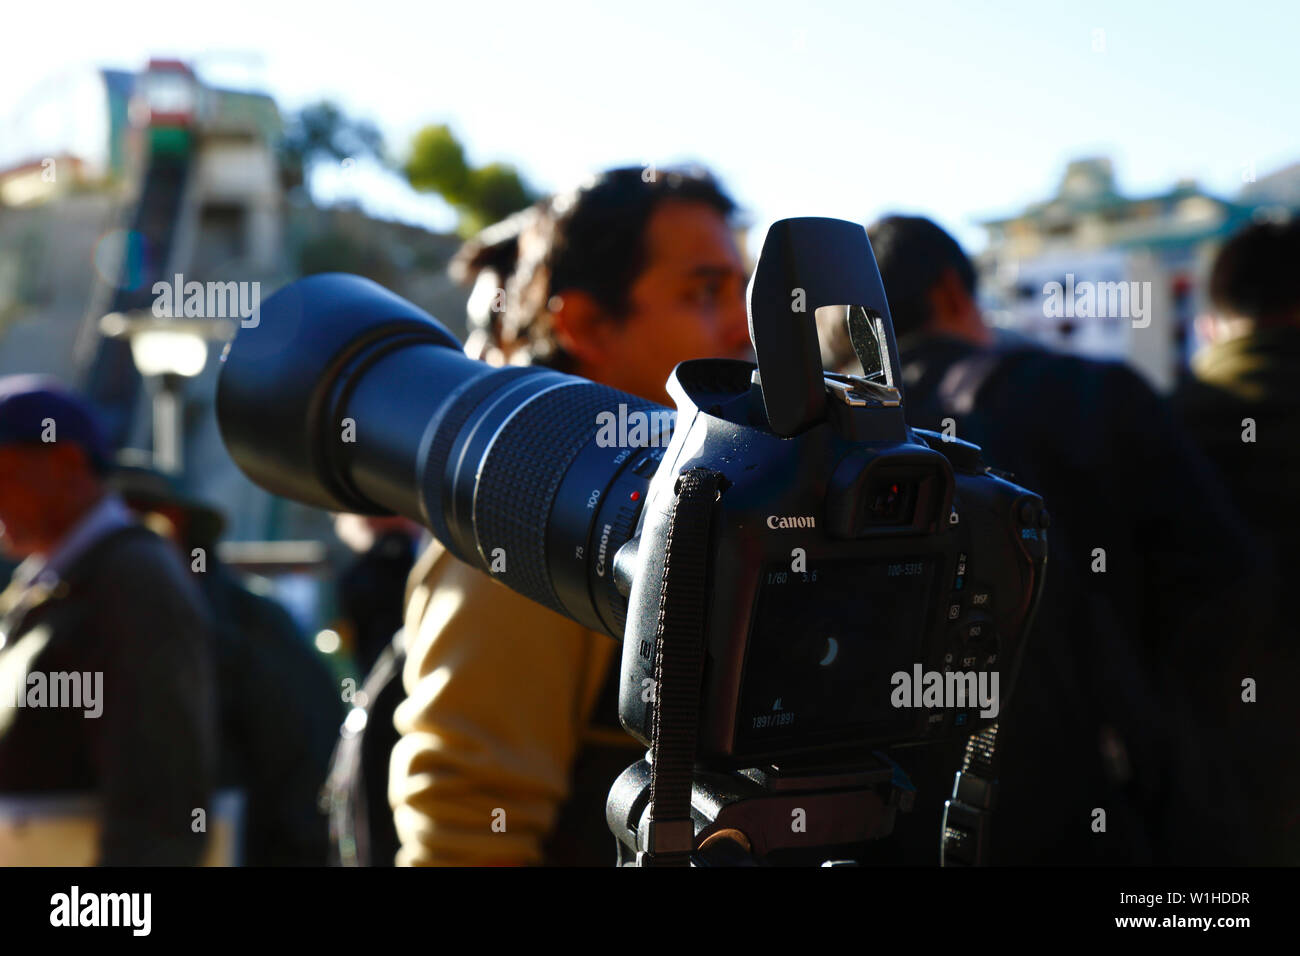 Fujifilm Instax Cameras for sale in La Paz, Bolivia